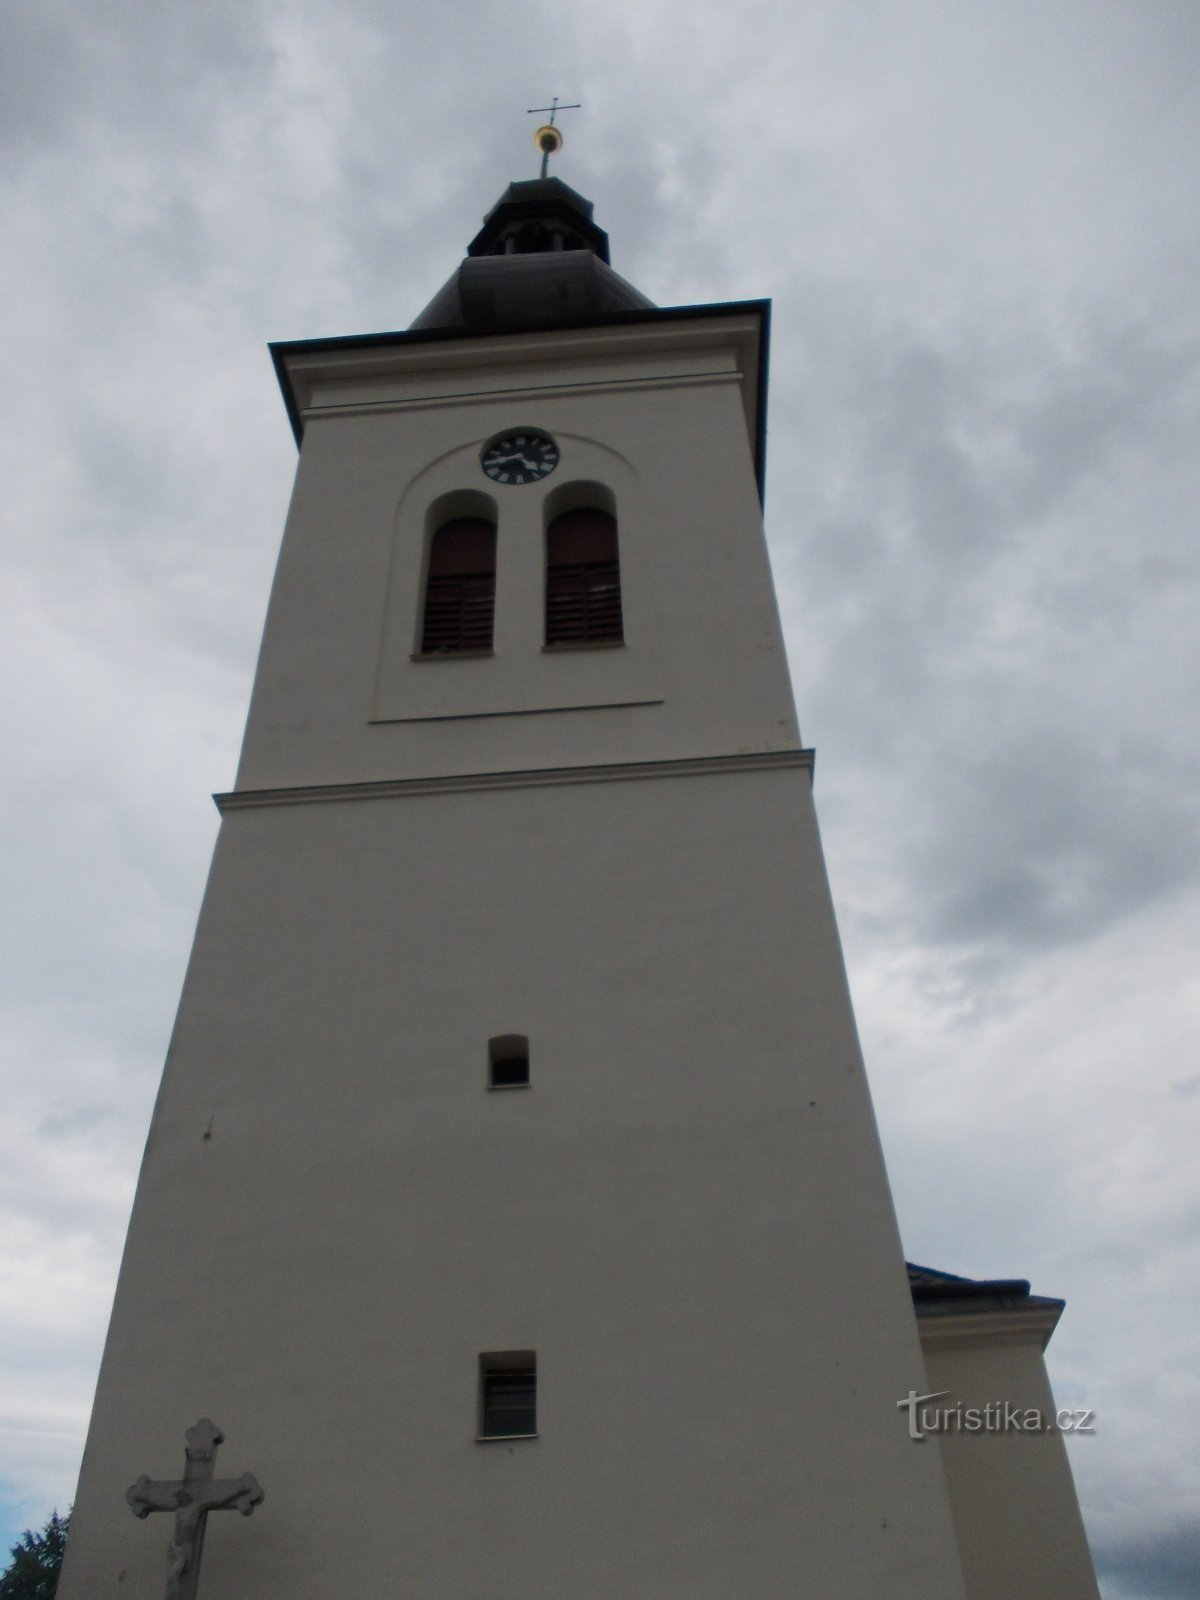 clocher de l'église